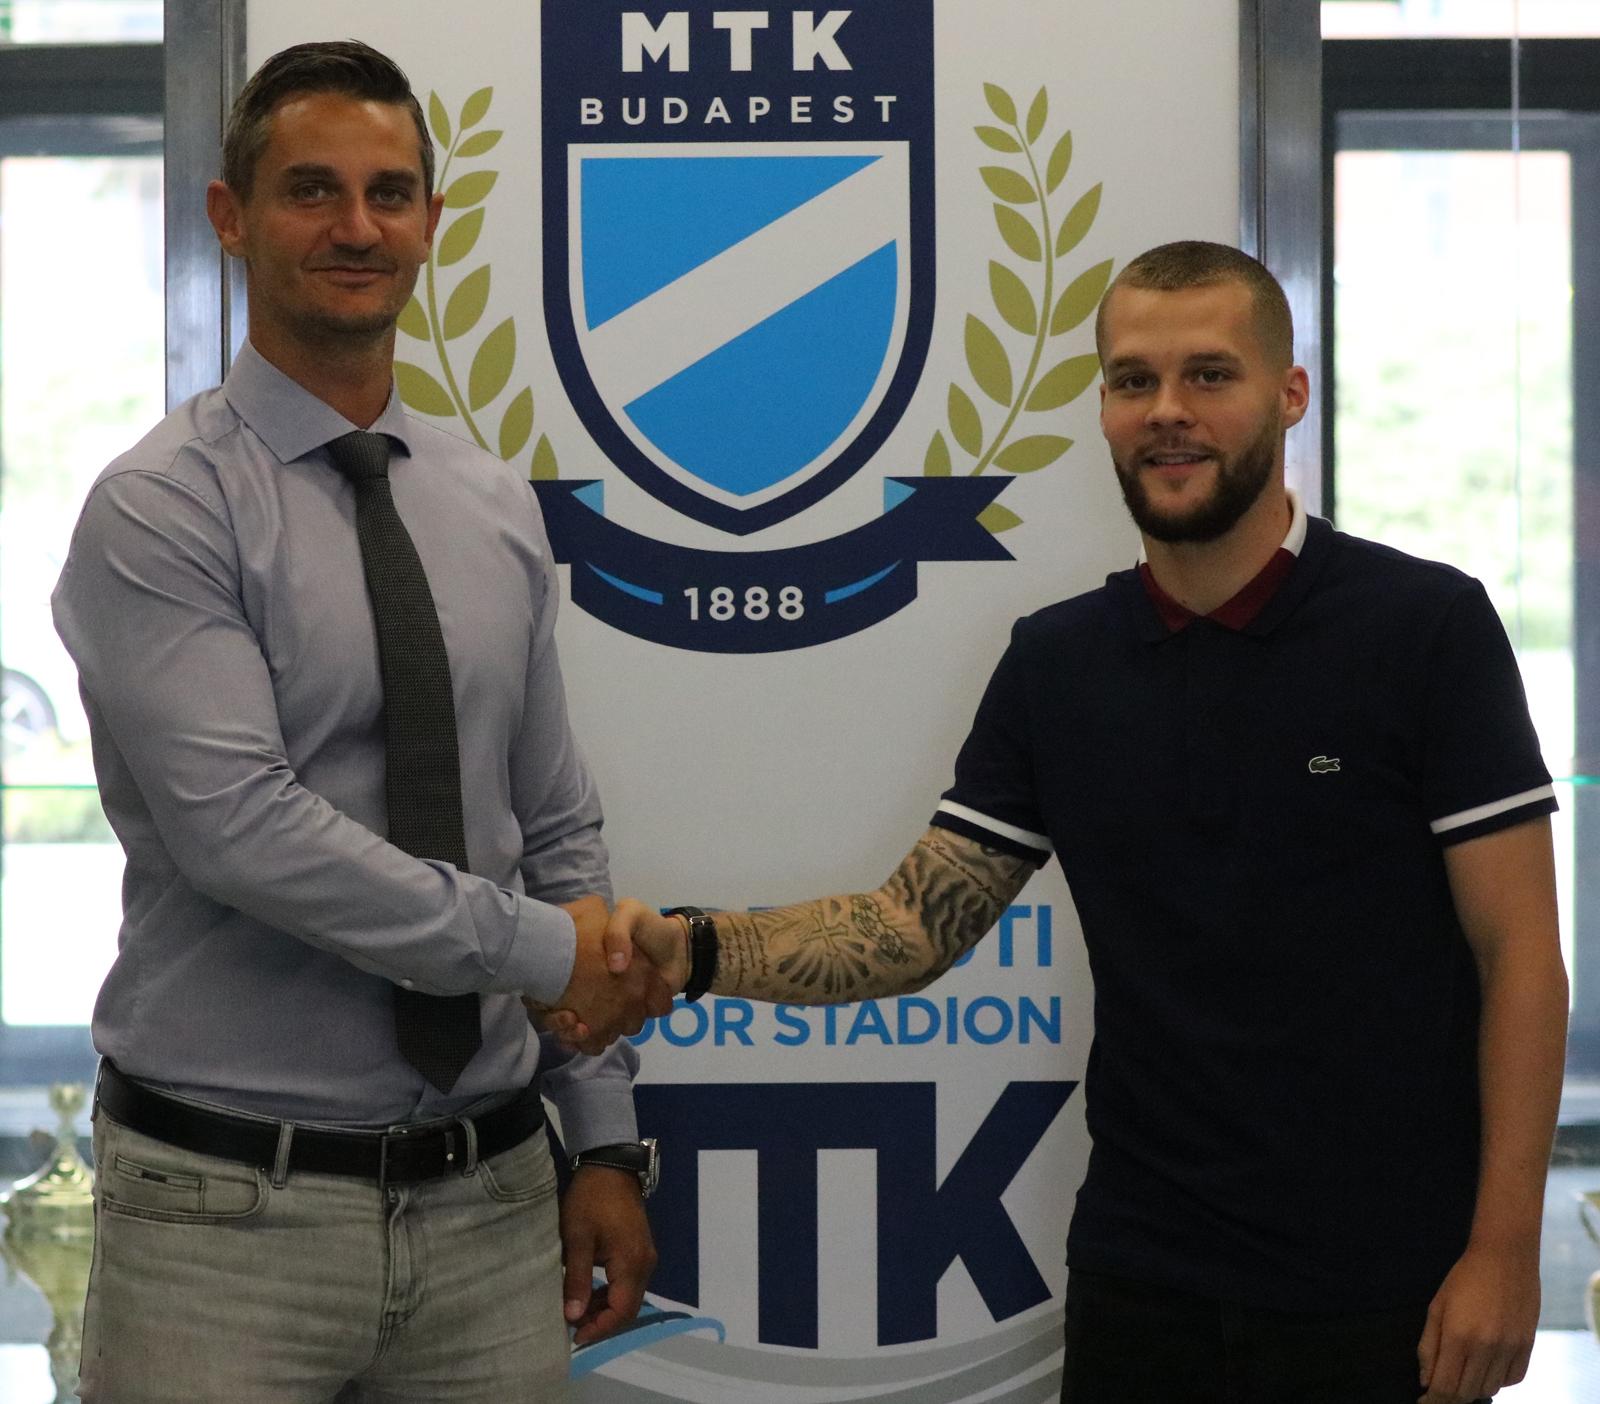 Hollandiából igazoltunk magyar játékost - "Fontos szereplője lesz a jövő MTK-jának"